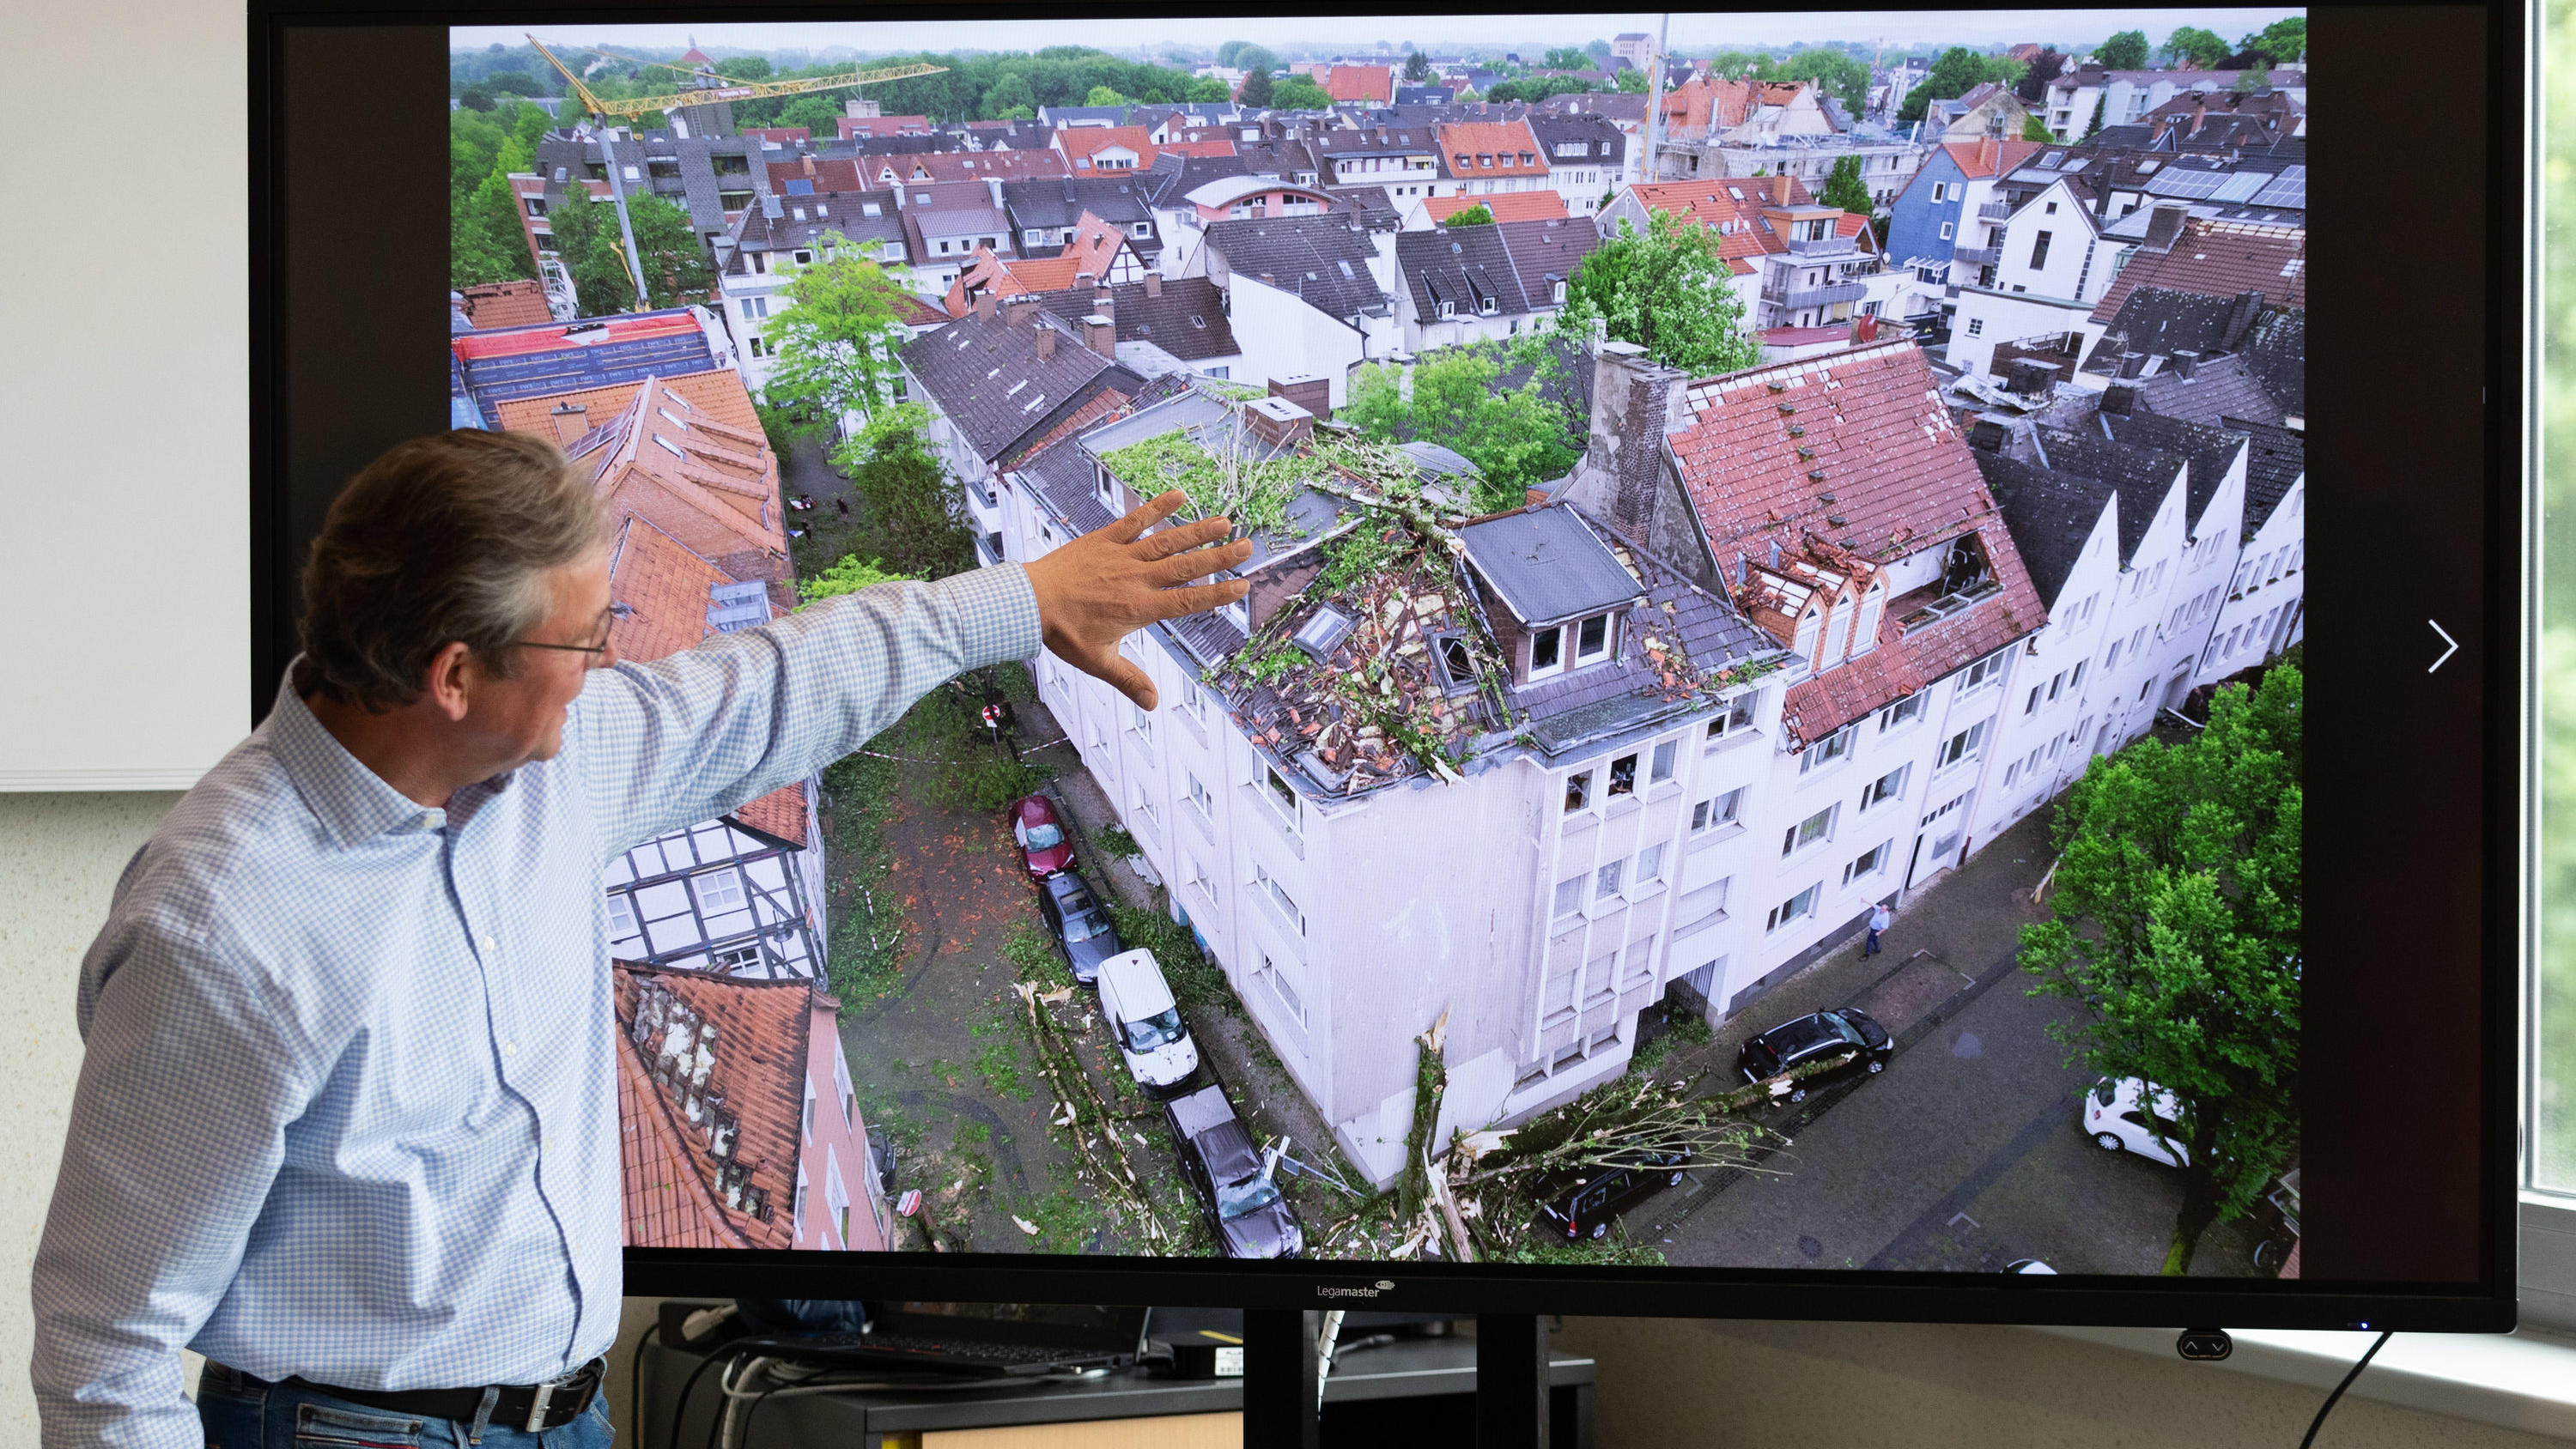 21.05.2022, Nordrhein-Westfalen, Paderborn: Der Bürgermeister von Paderborn, Michael Dreier, spricht bei einer Pressekonferenz vor einem Display mit einem Schadensbild aus der Innenstadt, das zeigt wie Bäume auf ein Hausdach geweht worden sind. Ein T